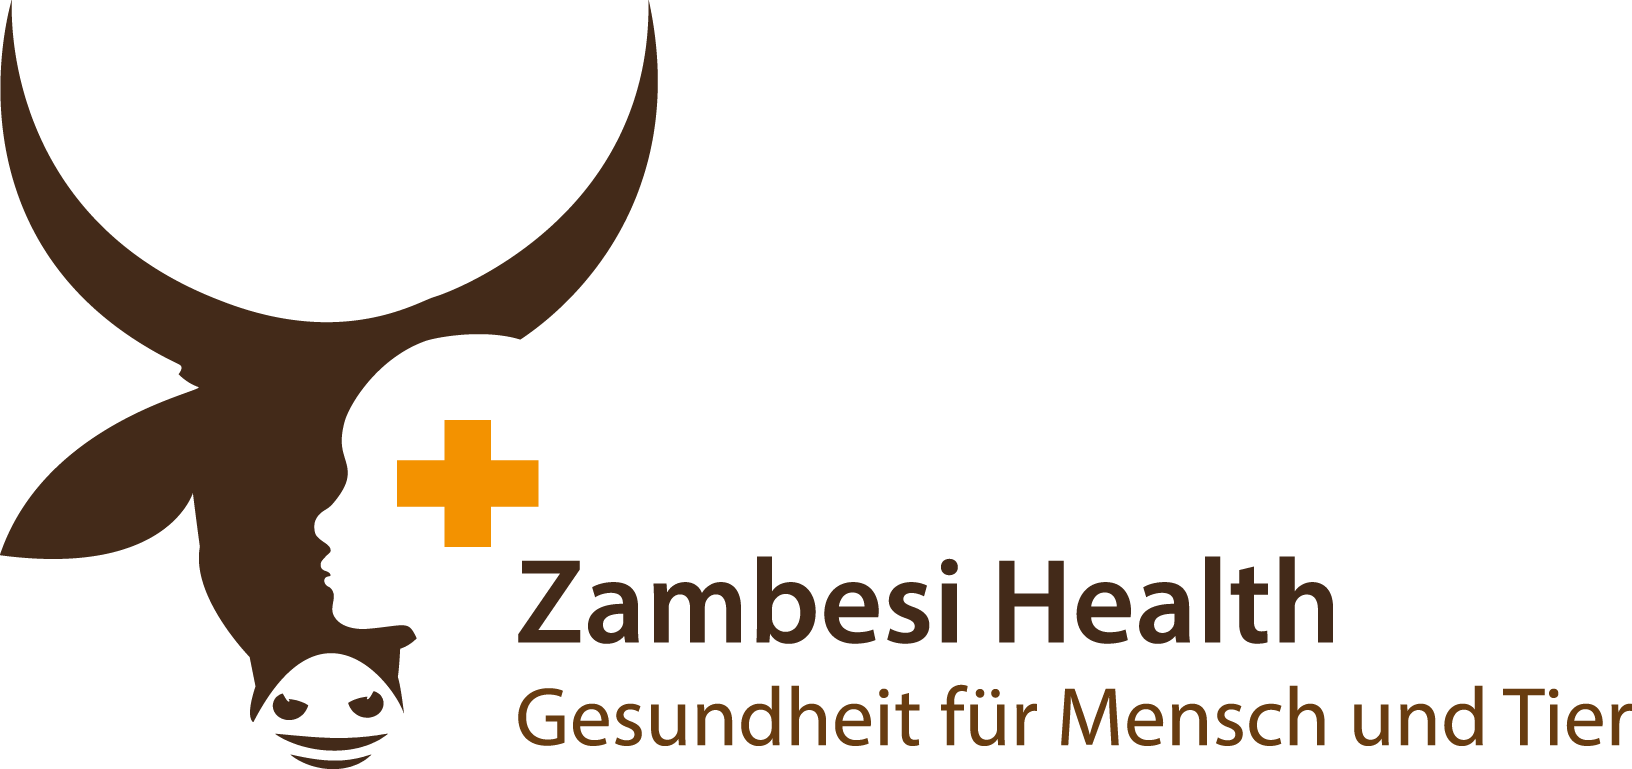 Zambesi Health - Gesundheit für Mensch und Tier e.V.